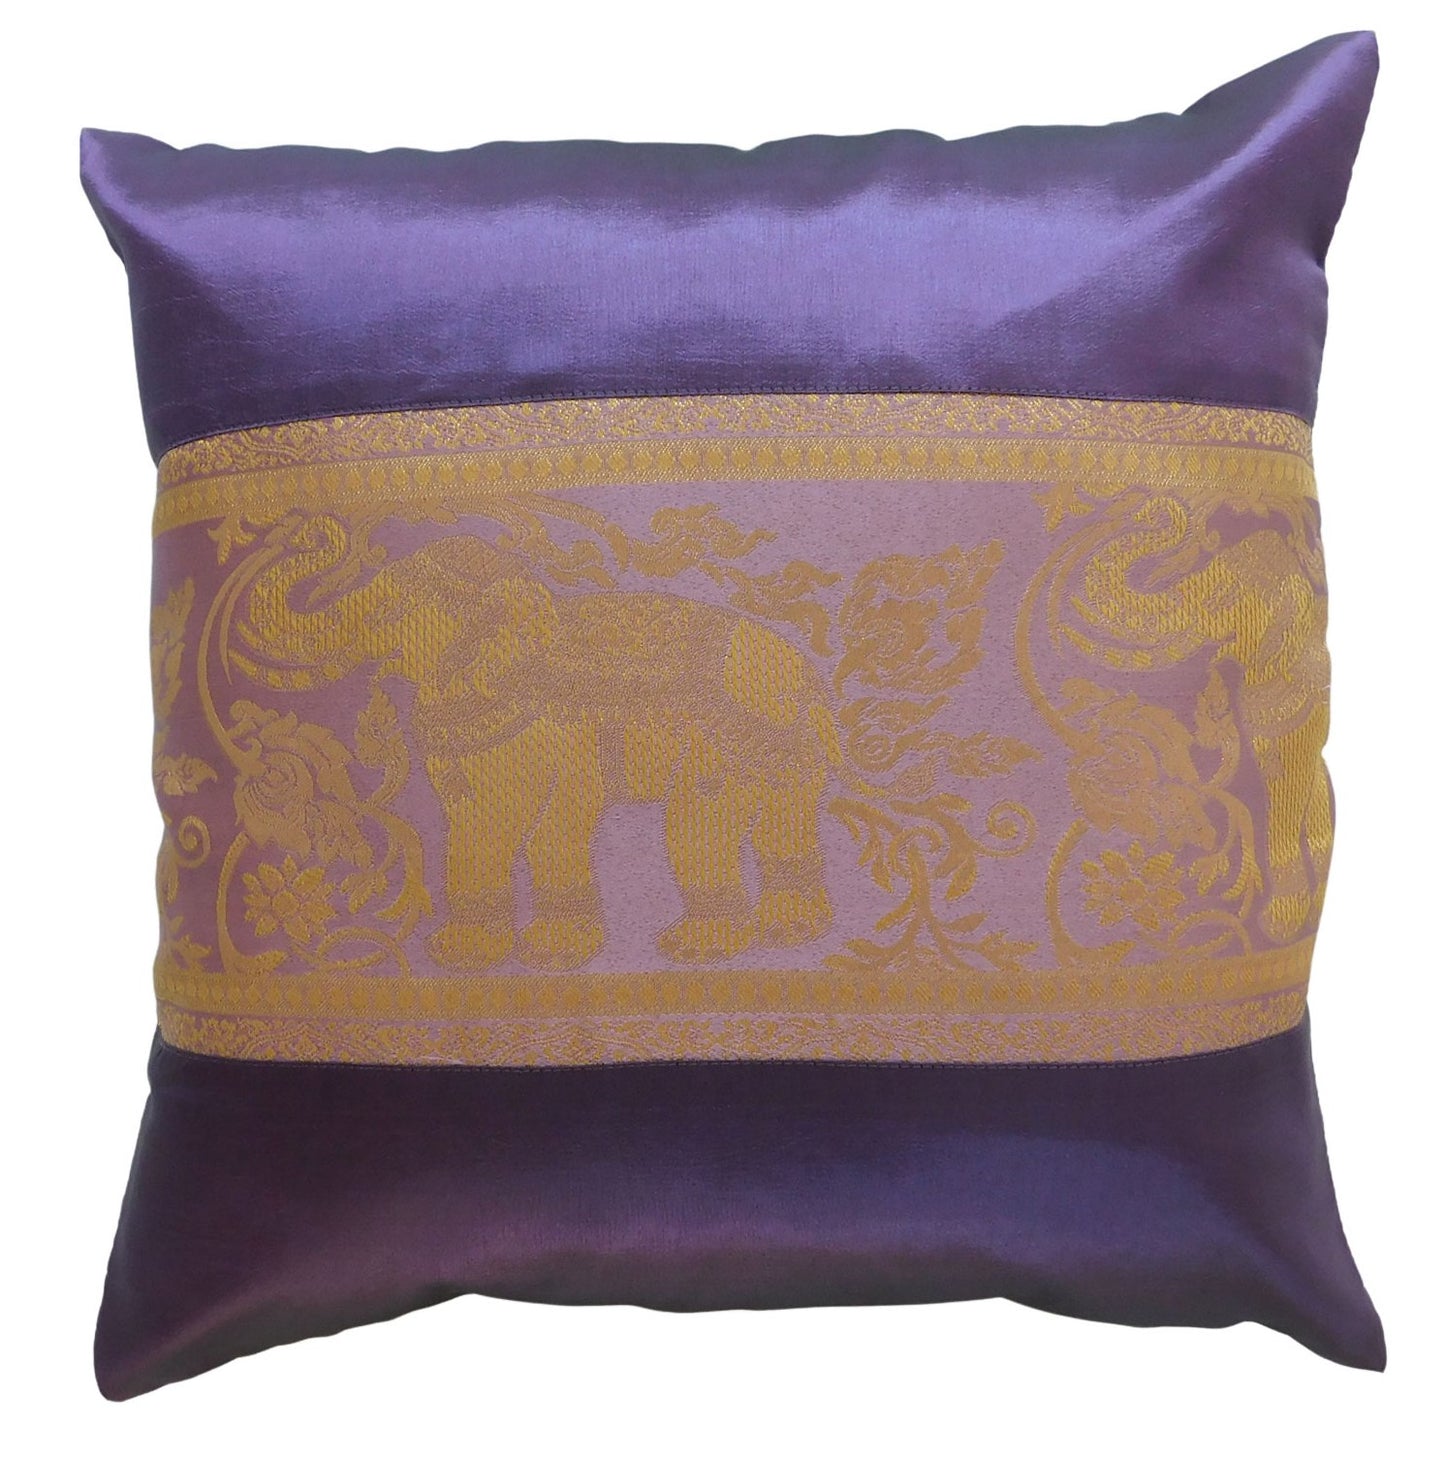 Kissen Kissenbezug Motiv Elefant einfarbig 40x40cm/15.5x15.5in verschiedene Farben Thai Seide Sofa Bett Gartenstuhl